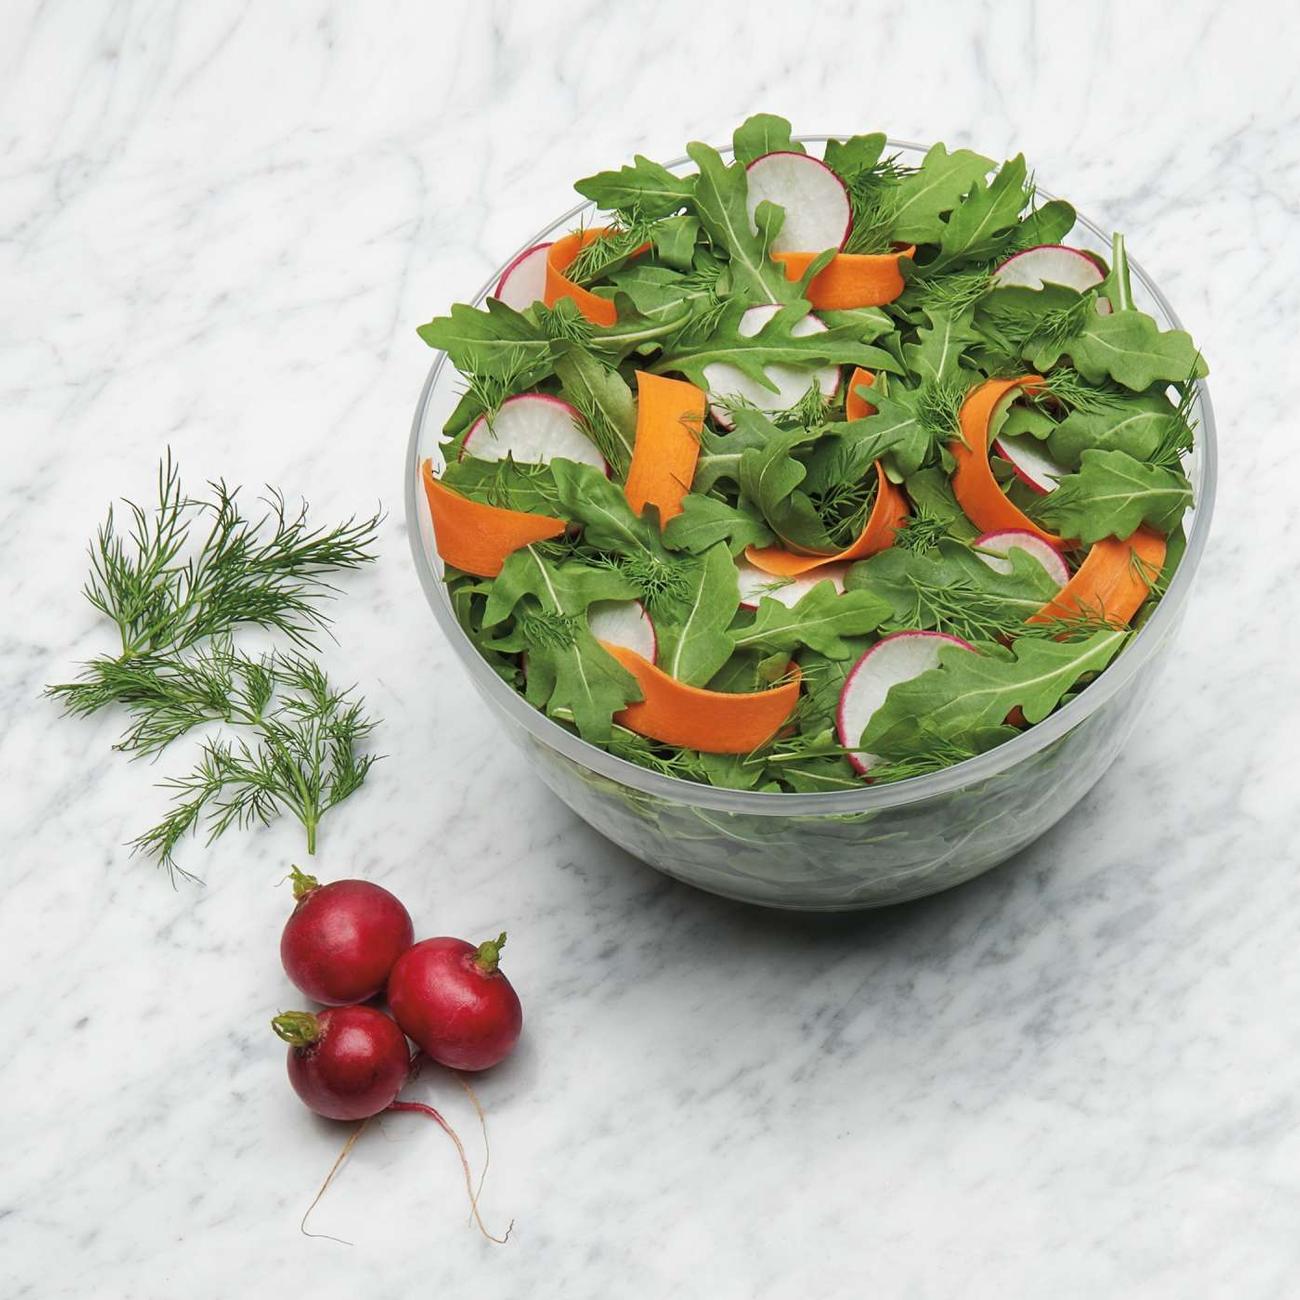 OXO Good Grips Little Salad & Herb Spinner 